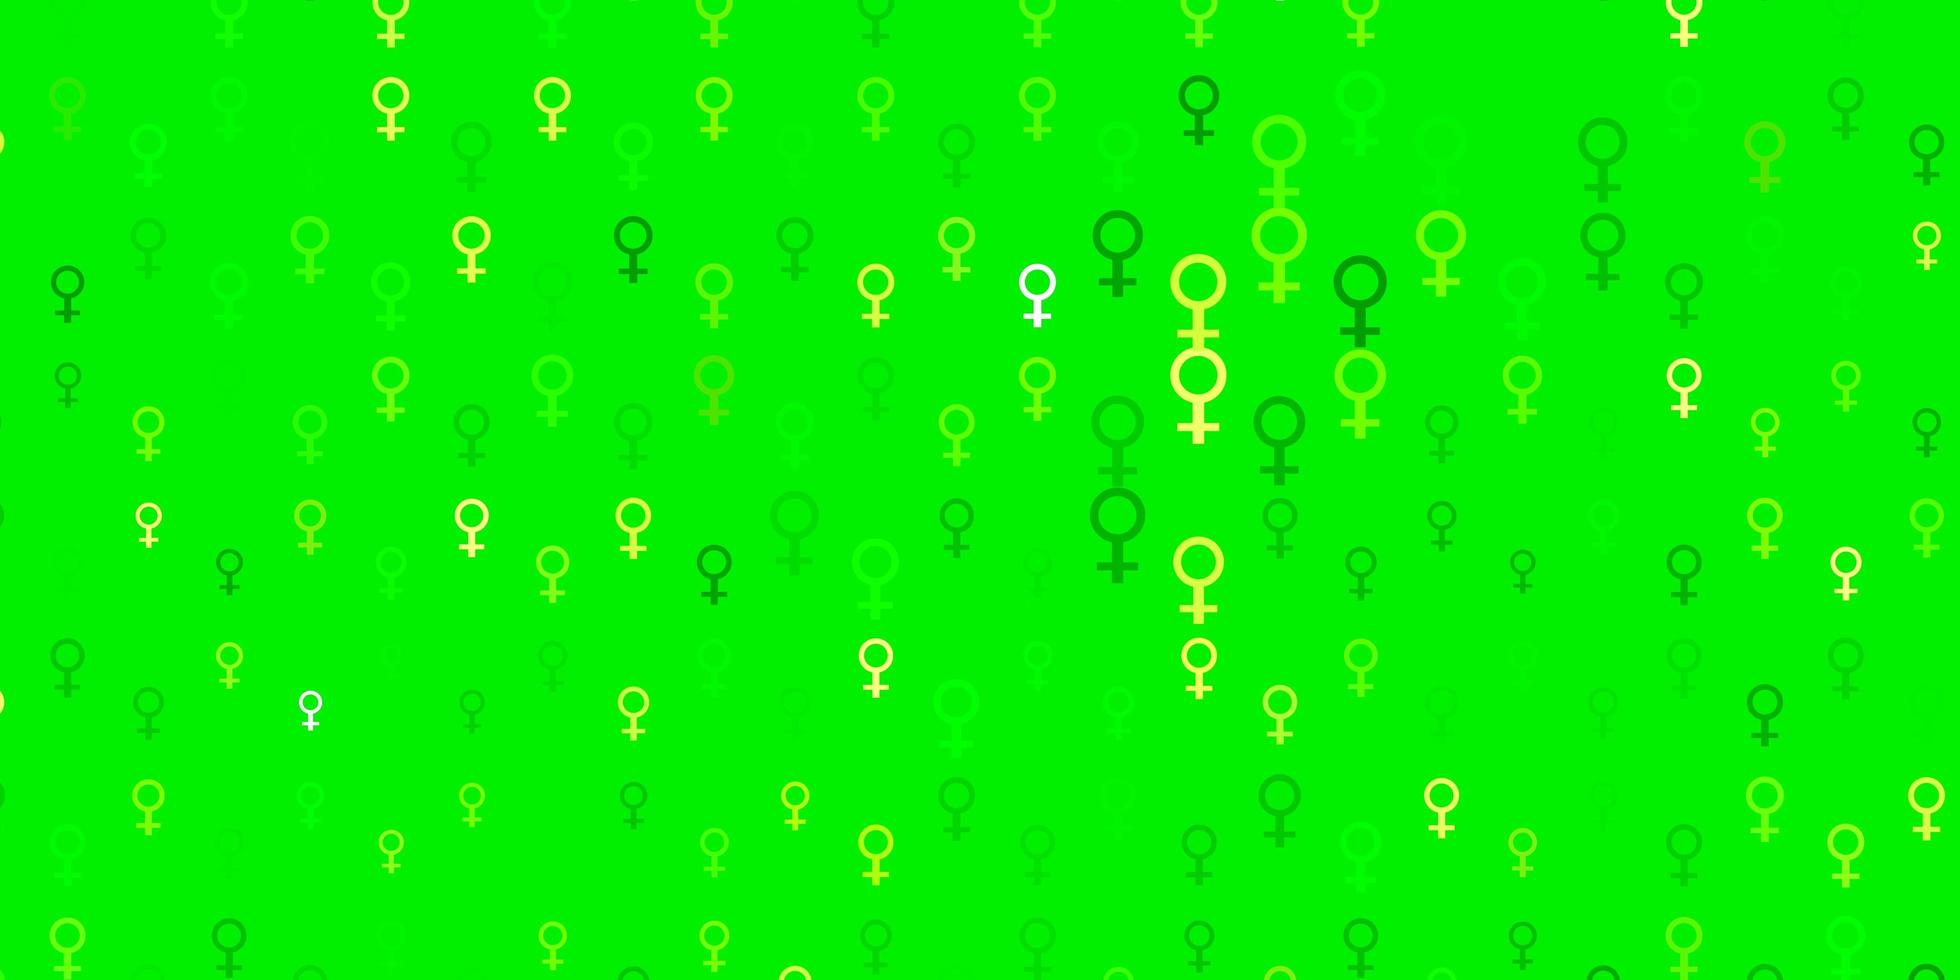 fundo vector verde e amarelo claro com símbolos de mulher.